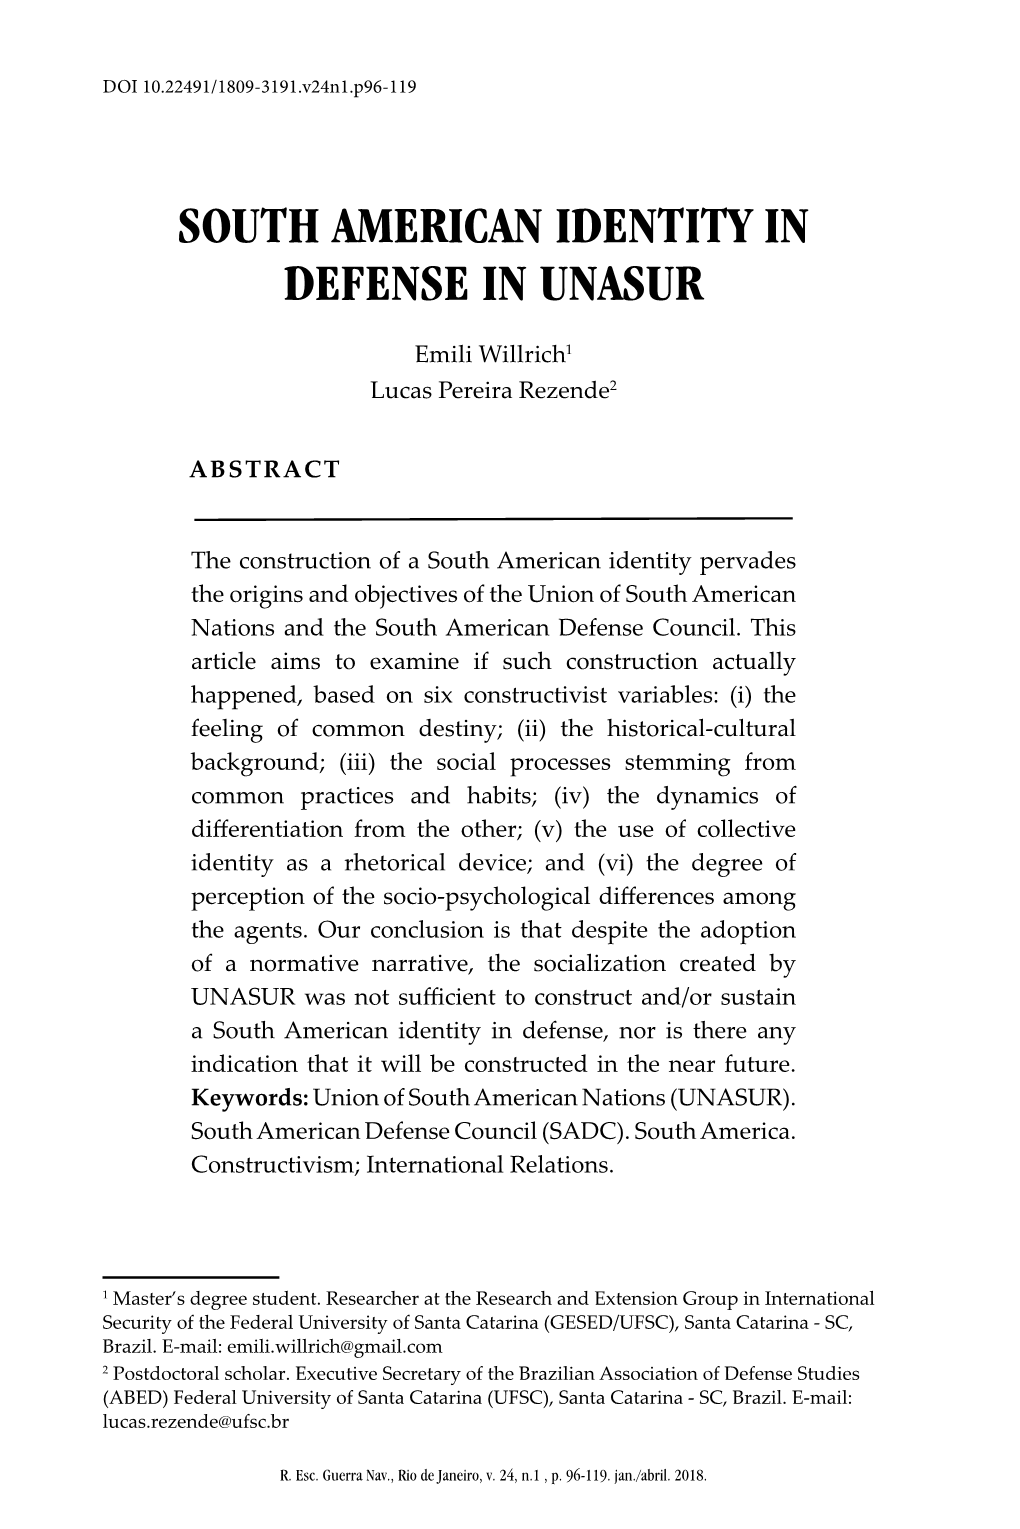 South American Identity in Defense in Unasur